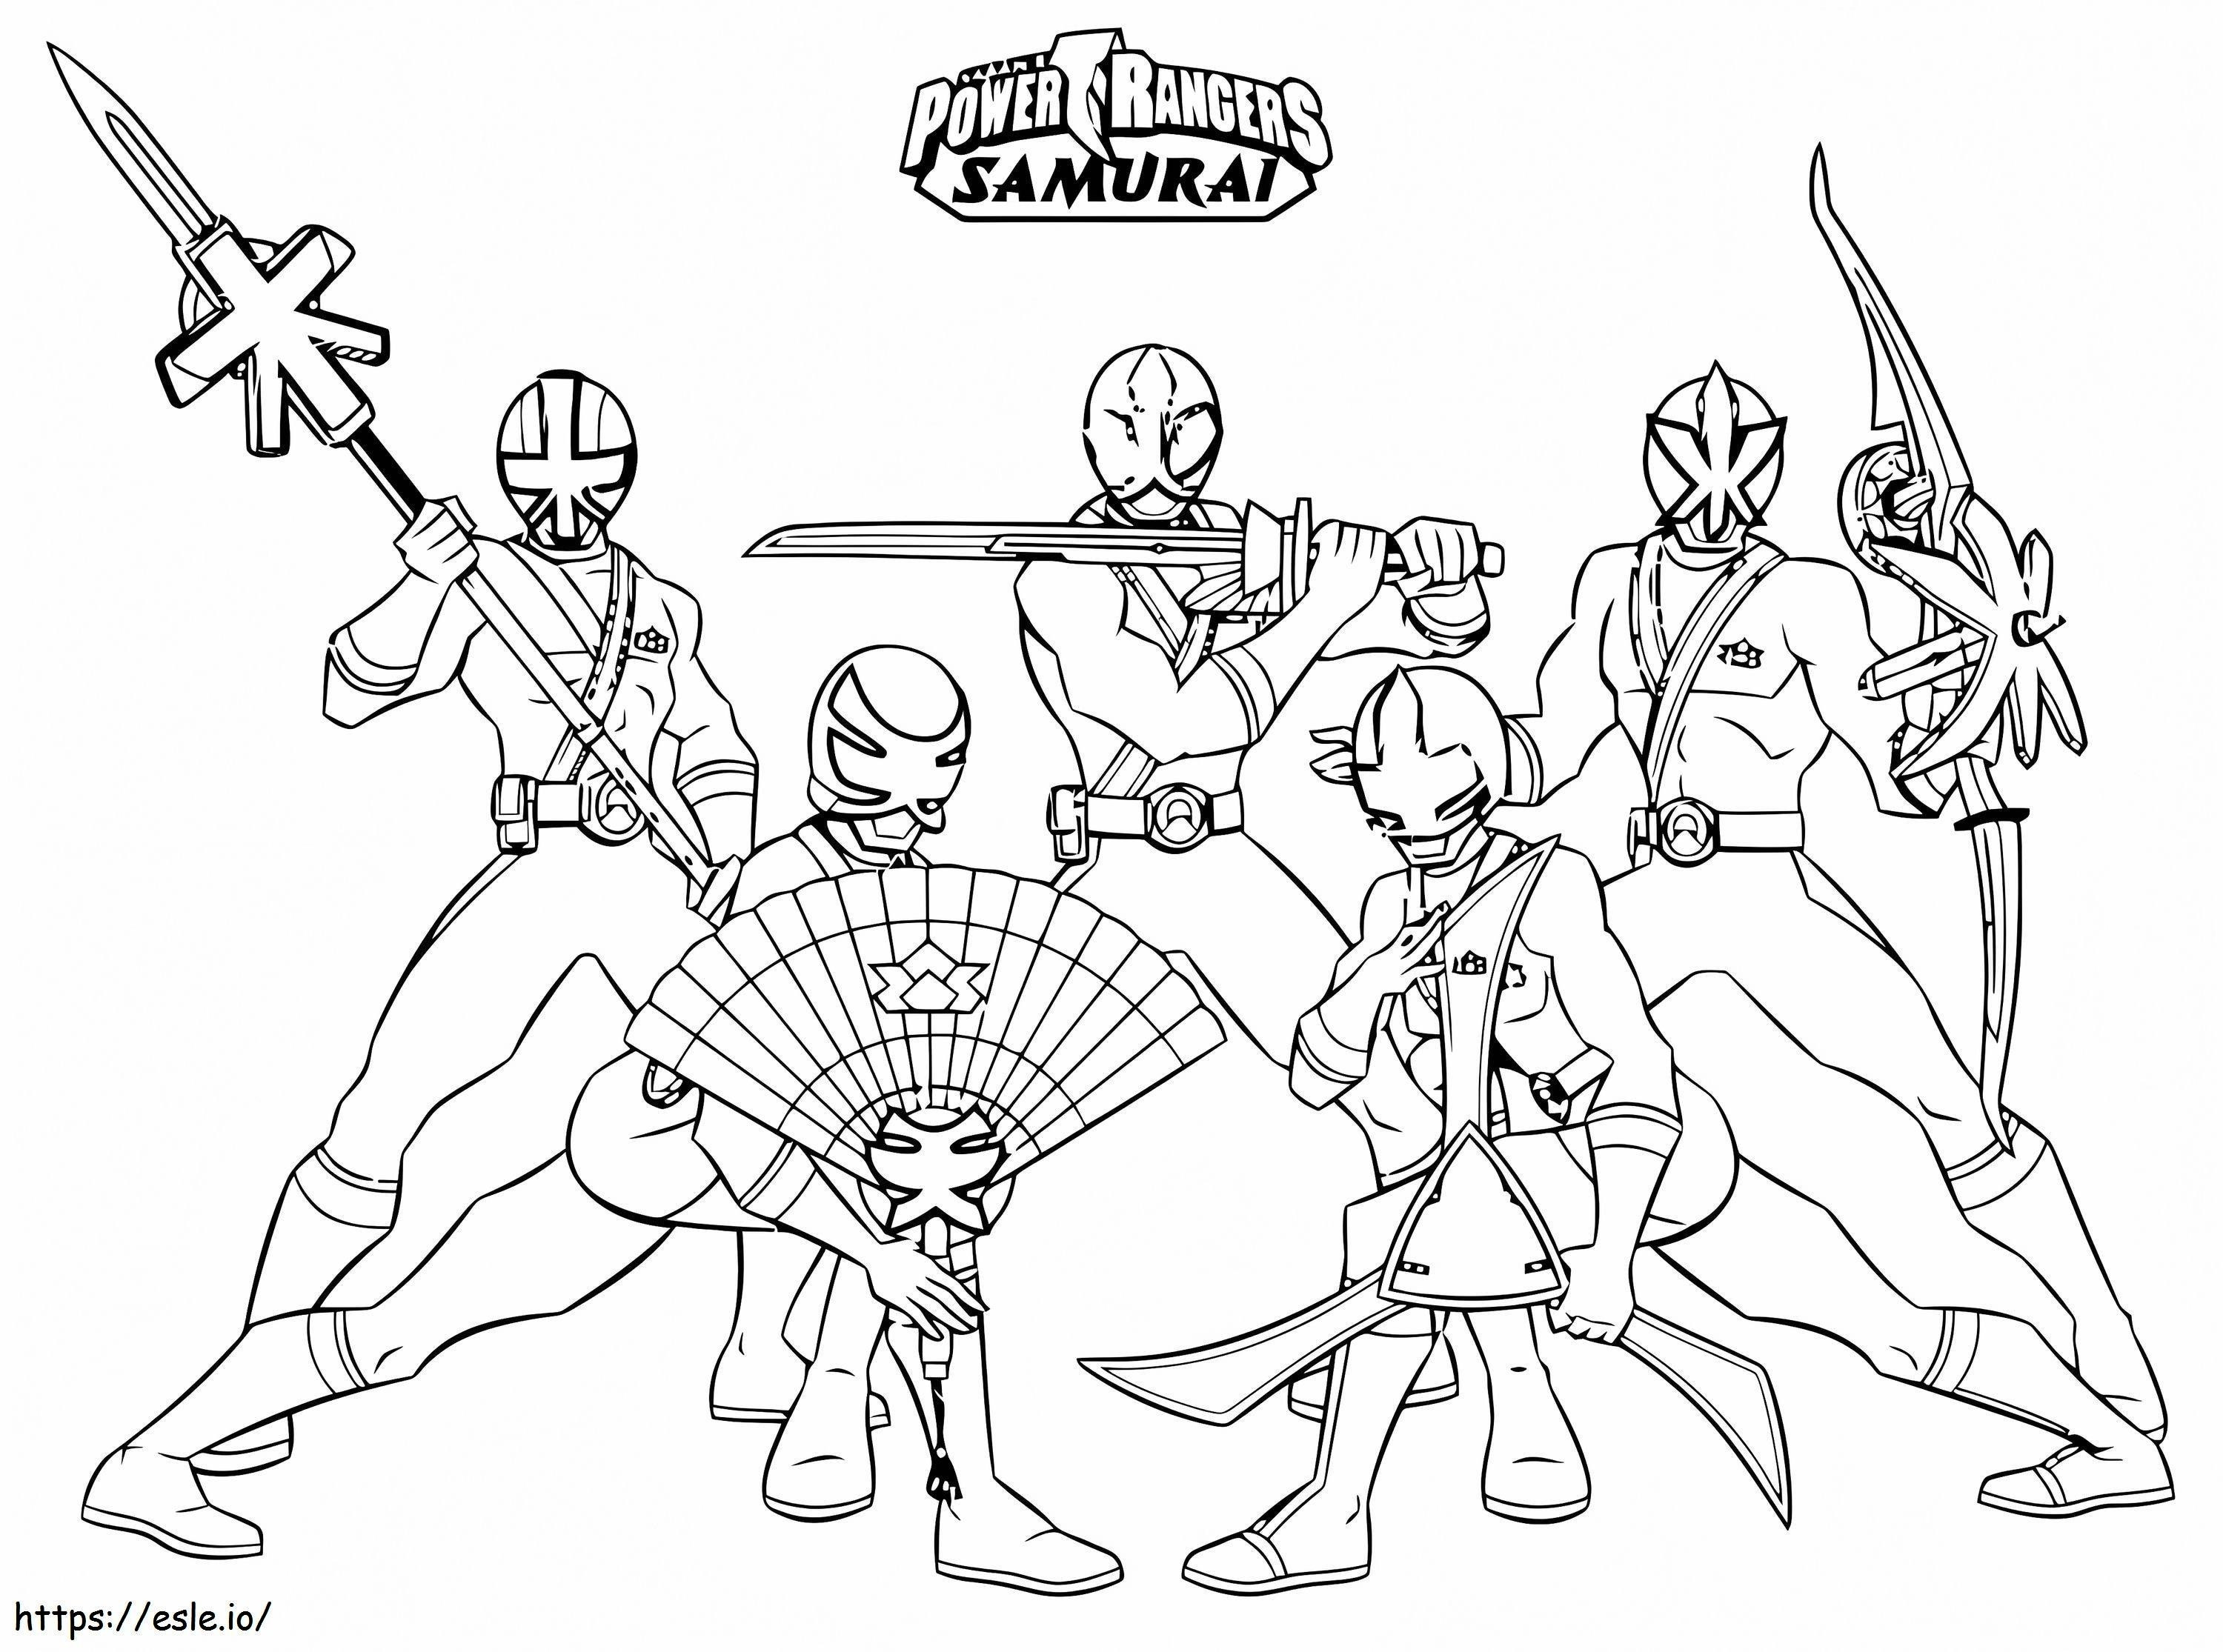 1542765316 Indrukwekkende Power Rangers Samurai online voor jongens om gratis af te drukken kleurplaat kleurplaat